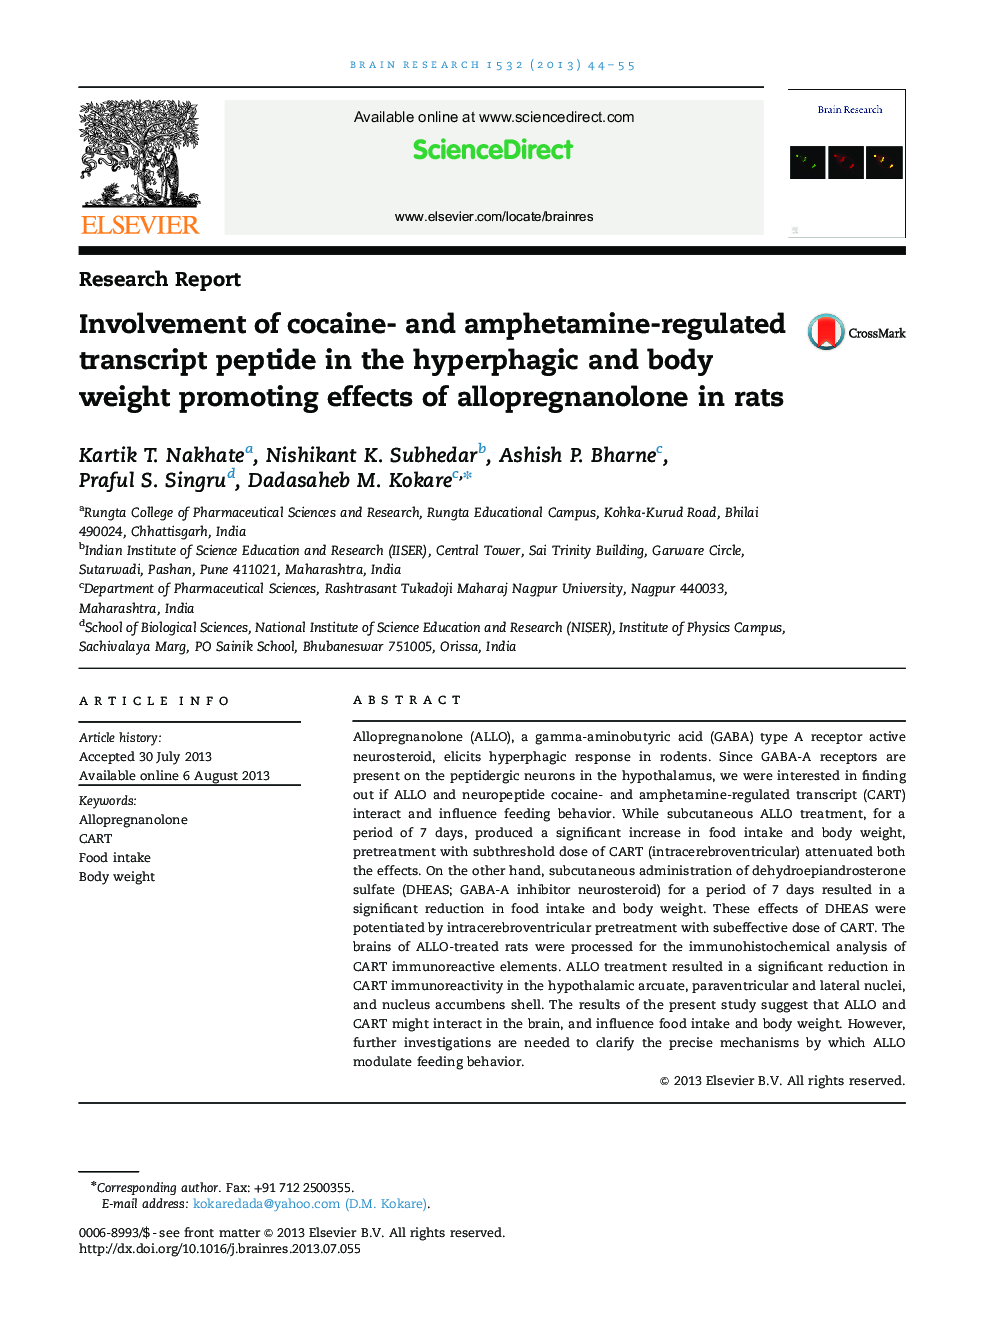 گزارش تحقیق در مورد استفاده از پپتید رونویسی کوکائین و آمفتامین در اثرات افزایش هورمون فیزیکی و وزن بدن آلوپرنانیولون در موش صحرایی 